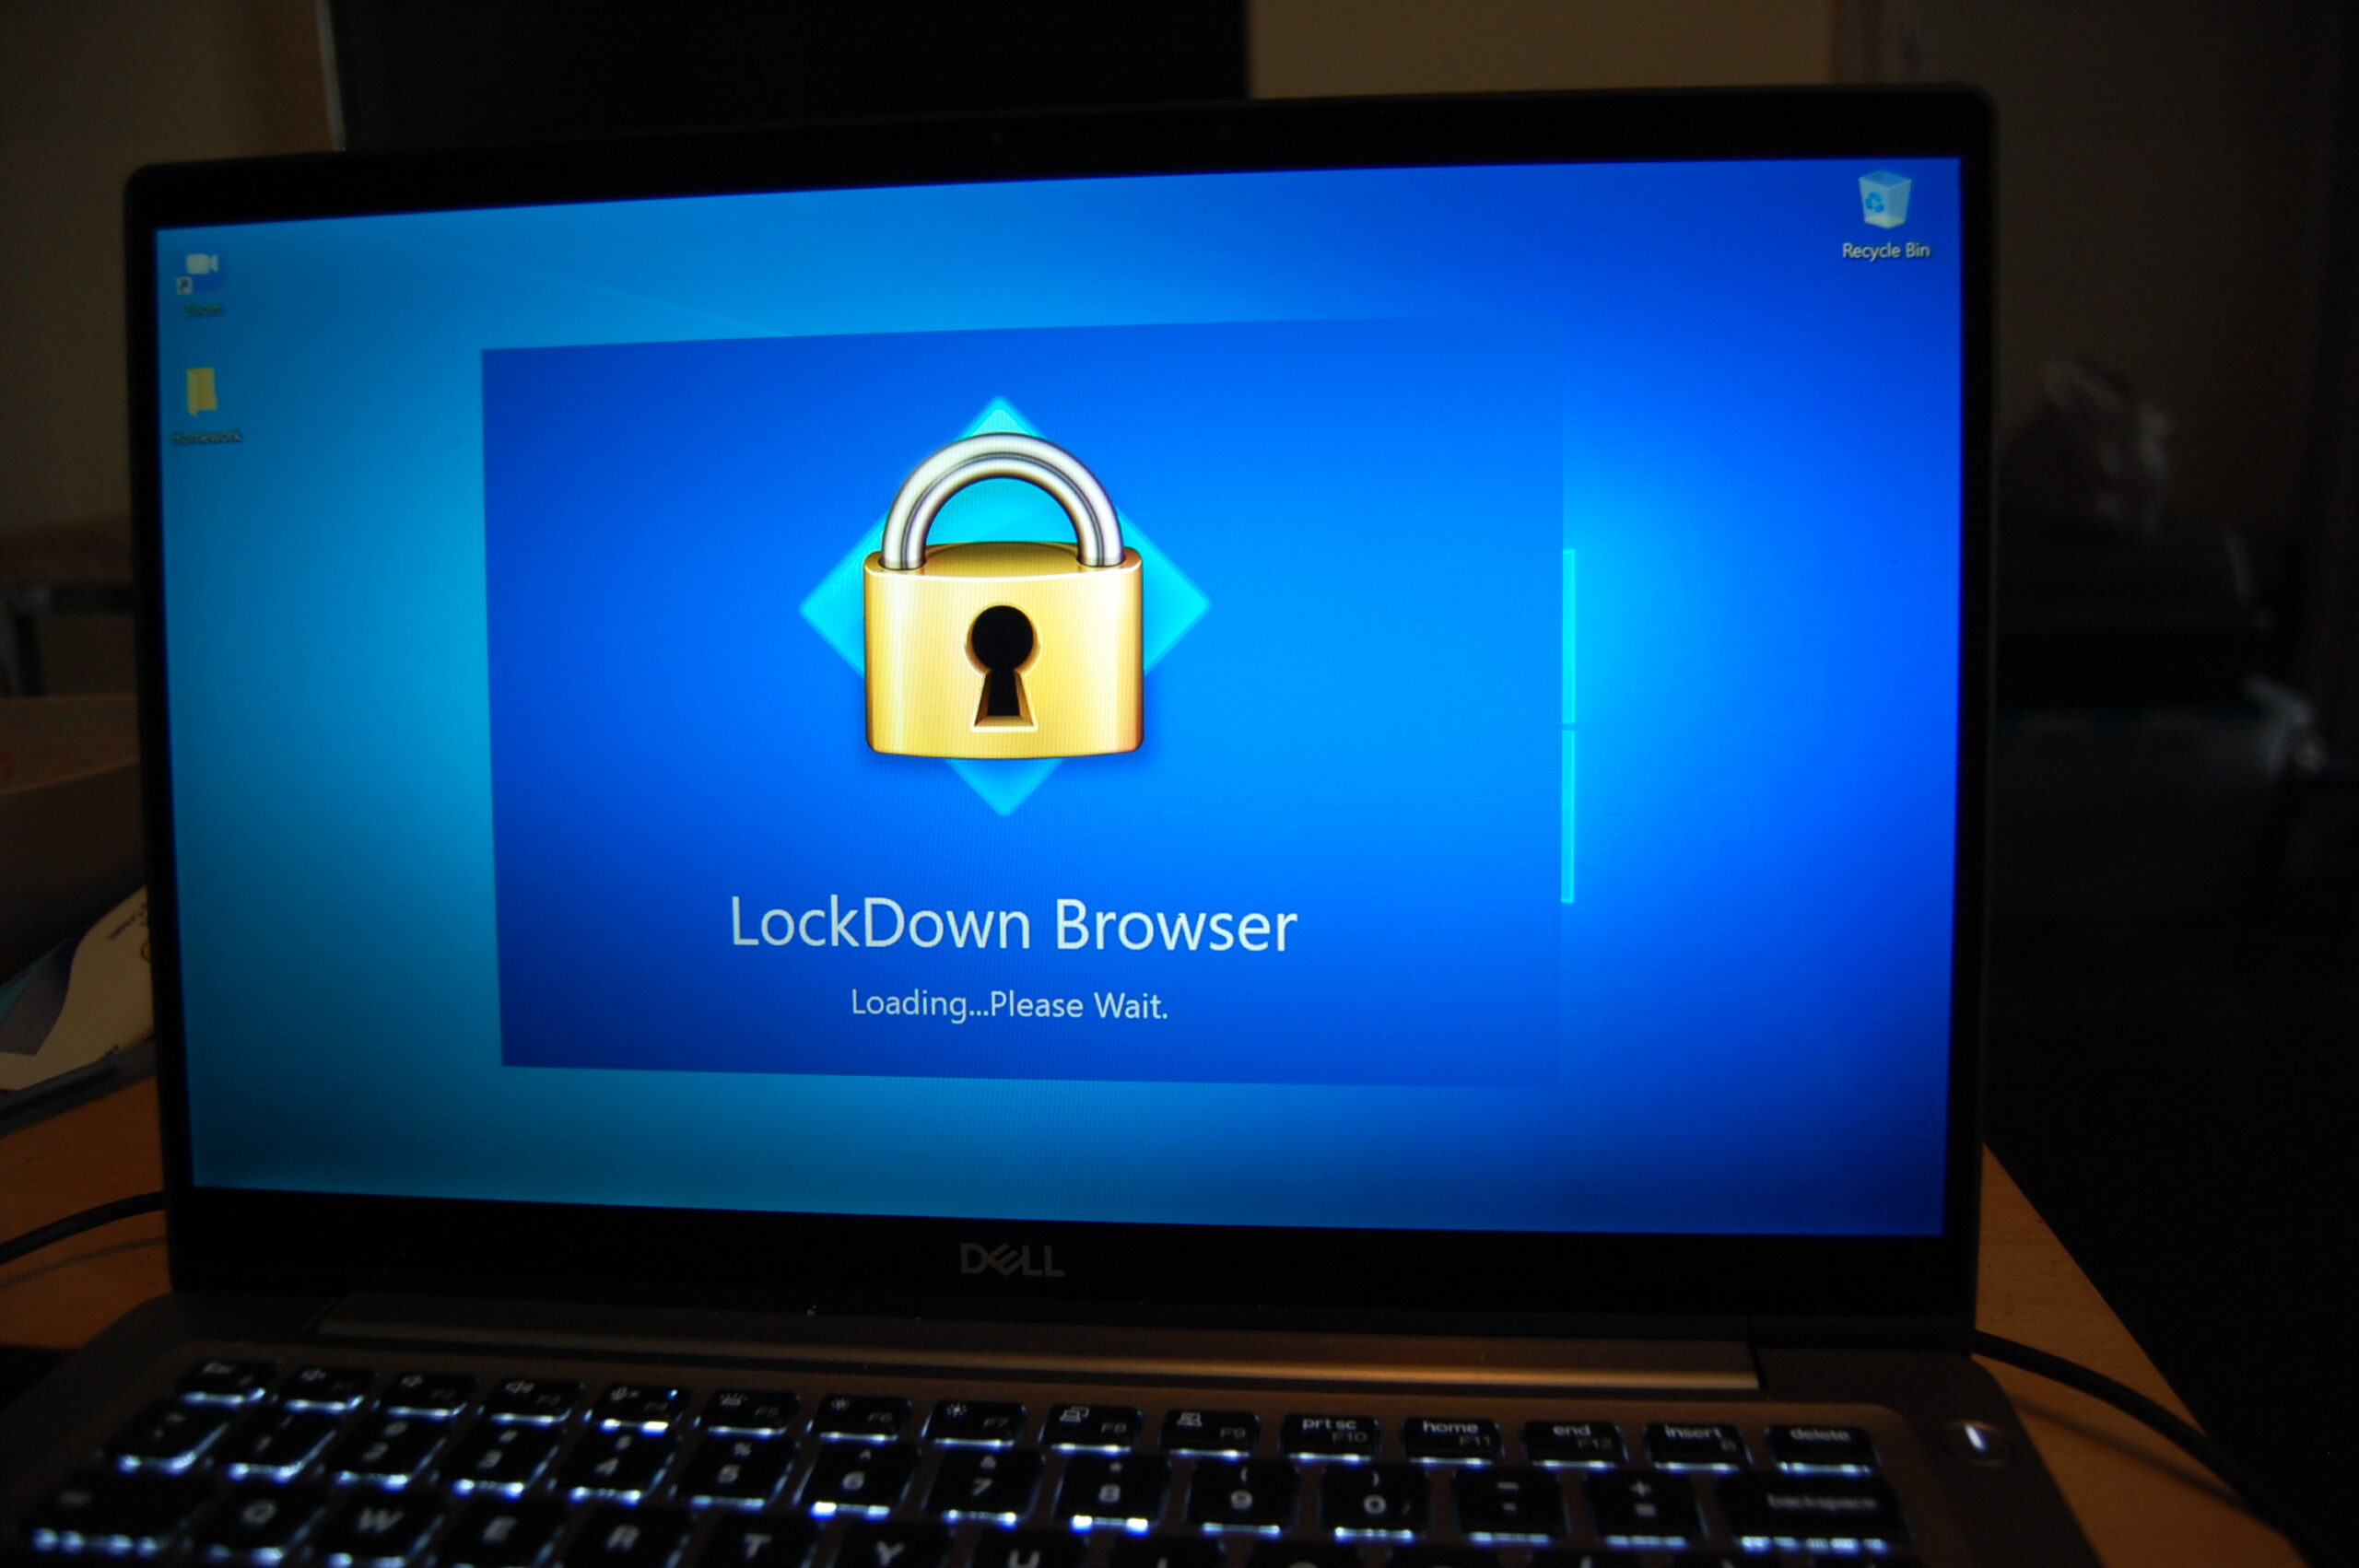 respondus lockdown browser download odu